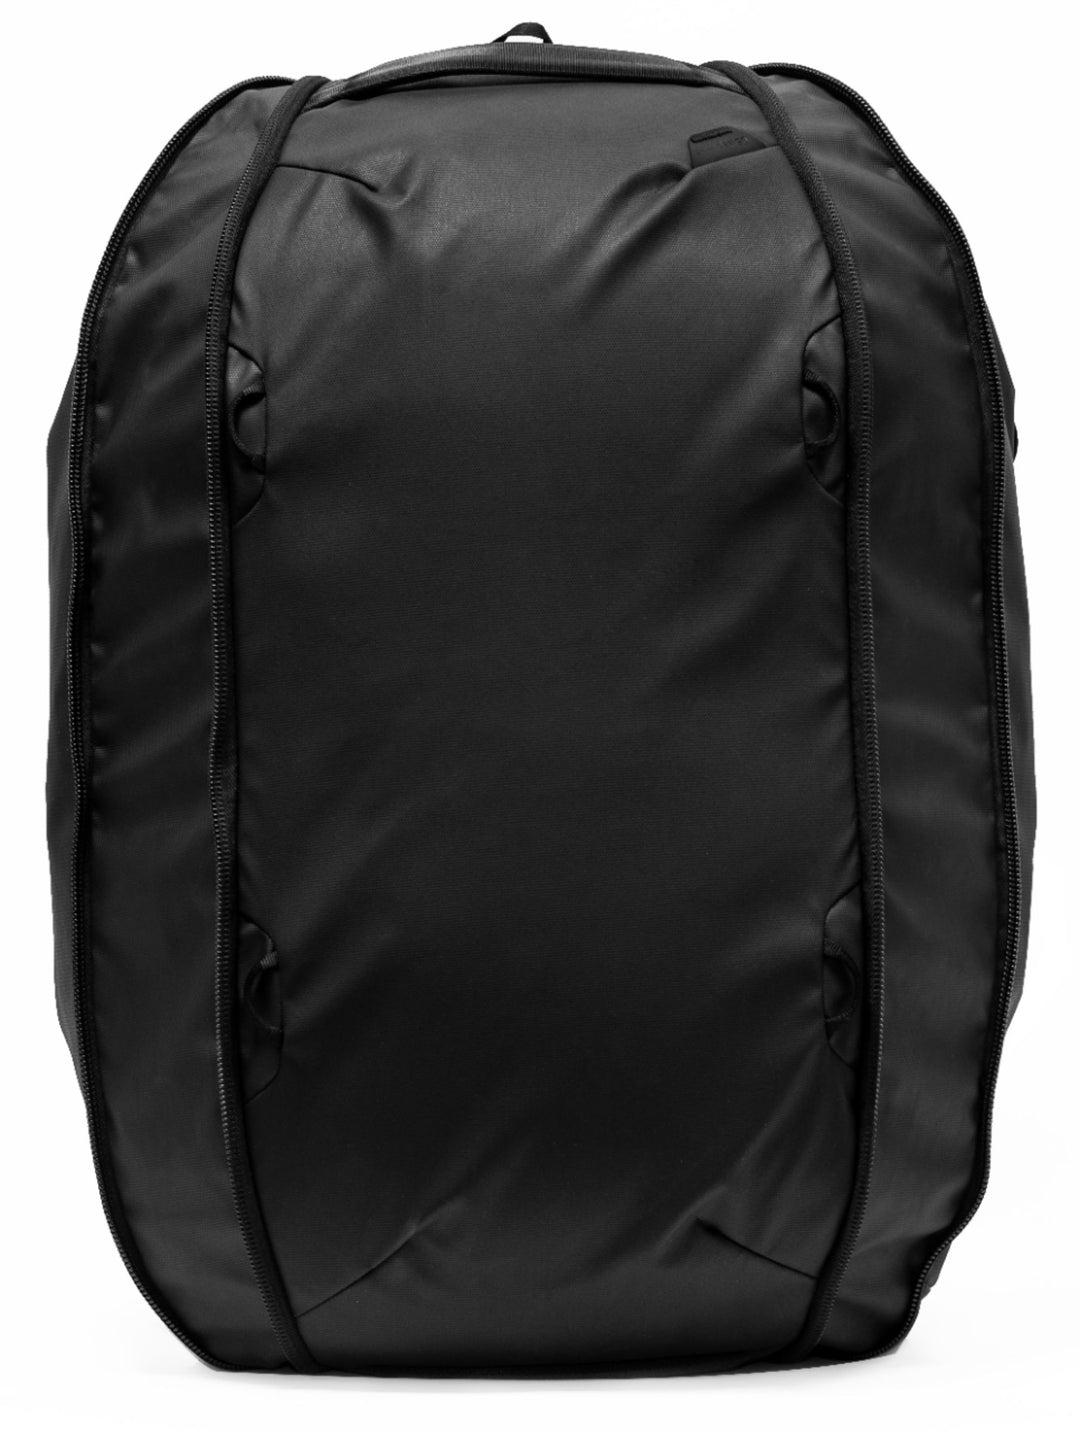 Peak Design - Travel Duffelpack - Black_20